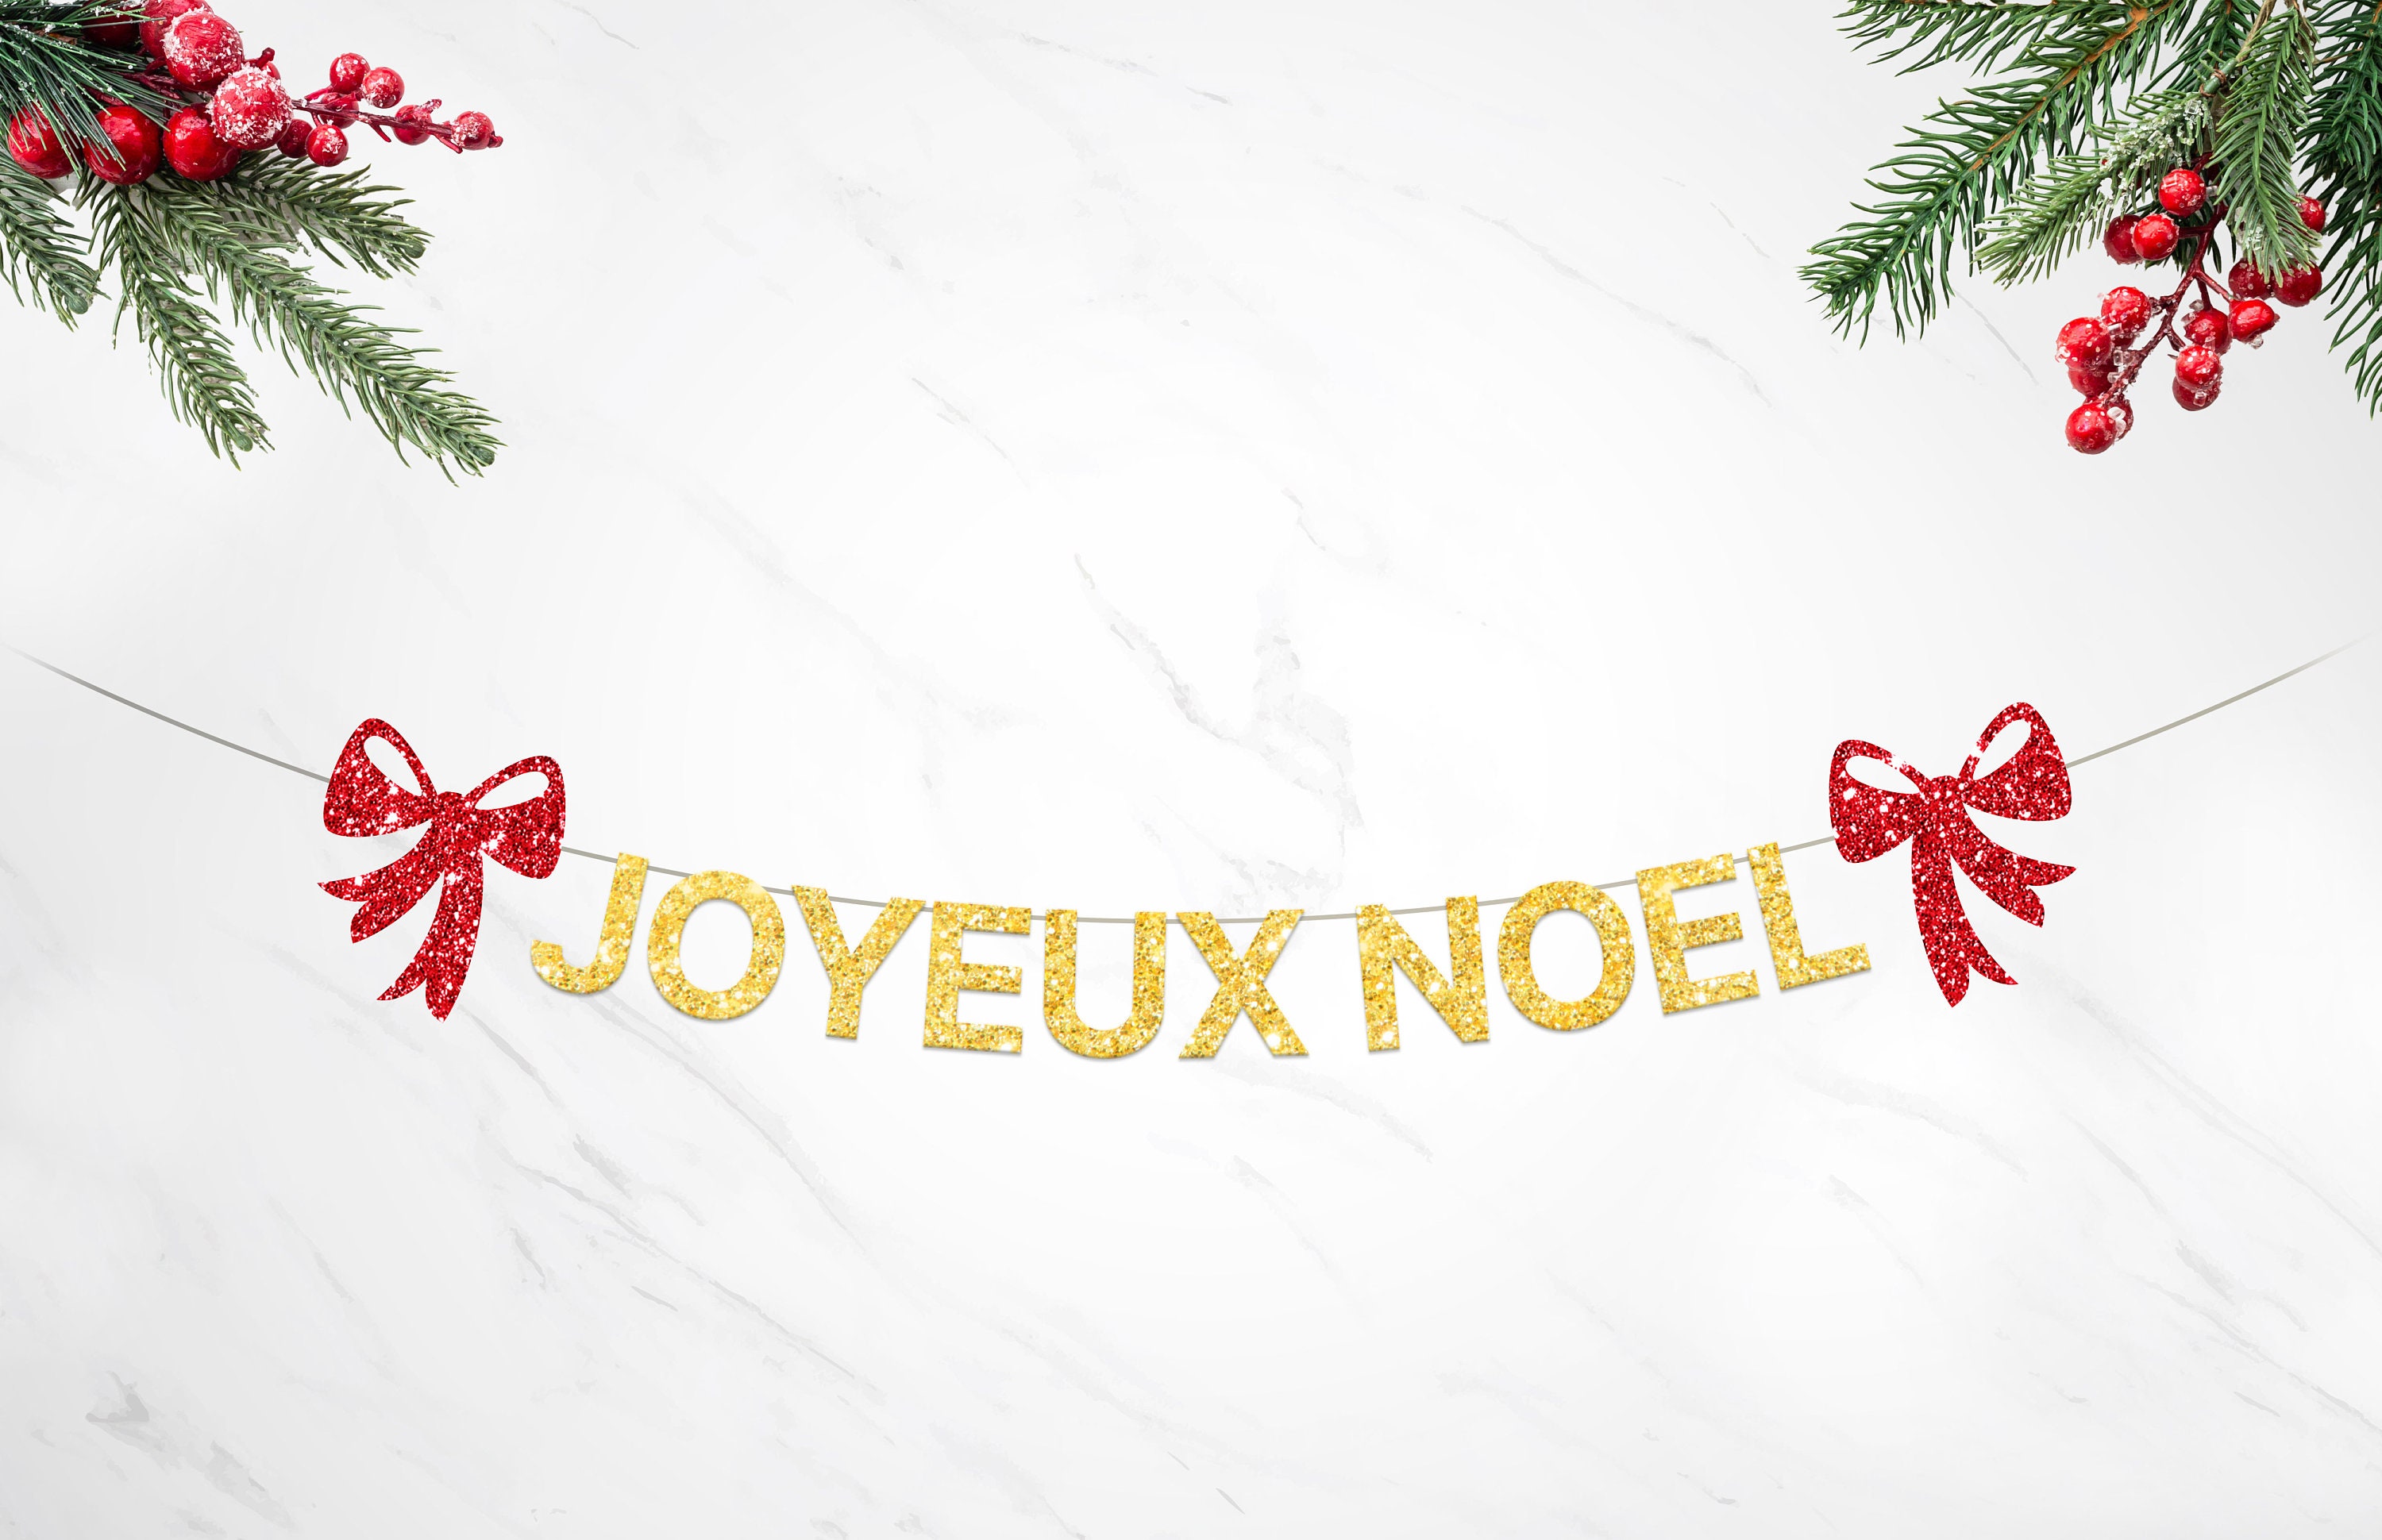 Joyeux Noel Banner, Joyeux Noel Garland, Merry Christmas Banner, Christmas  Home Decorations, Holiday Season Banner, French Letter Banner 